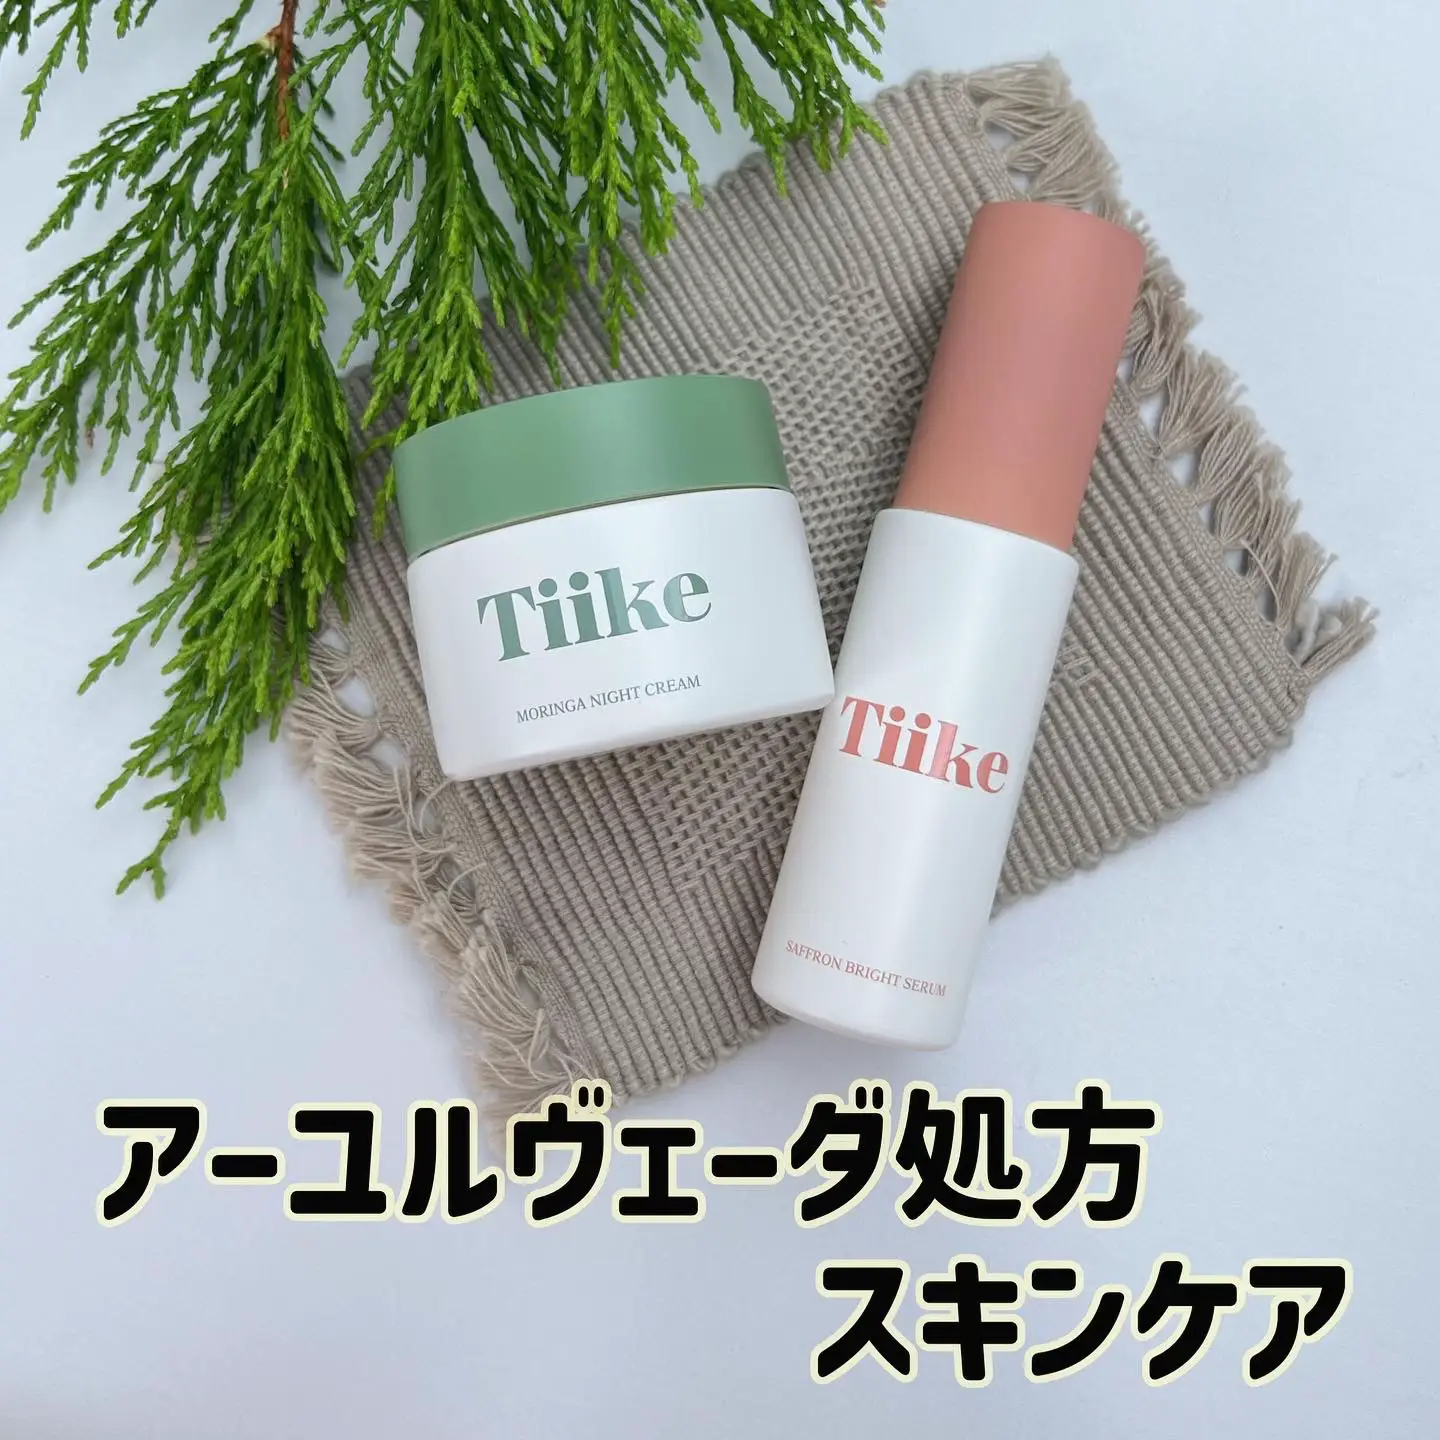 tiike アーユルヴェーダ - 化粧水/ローション